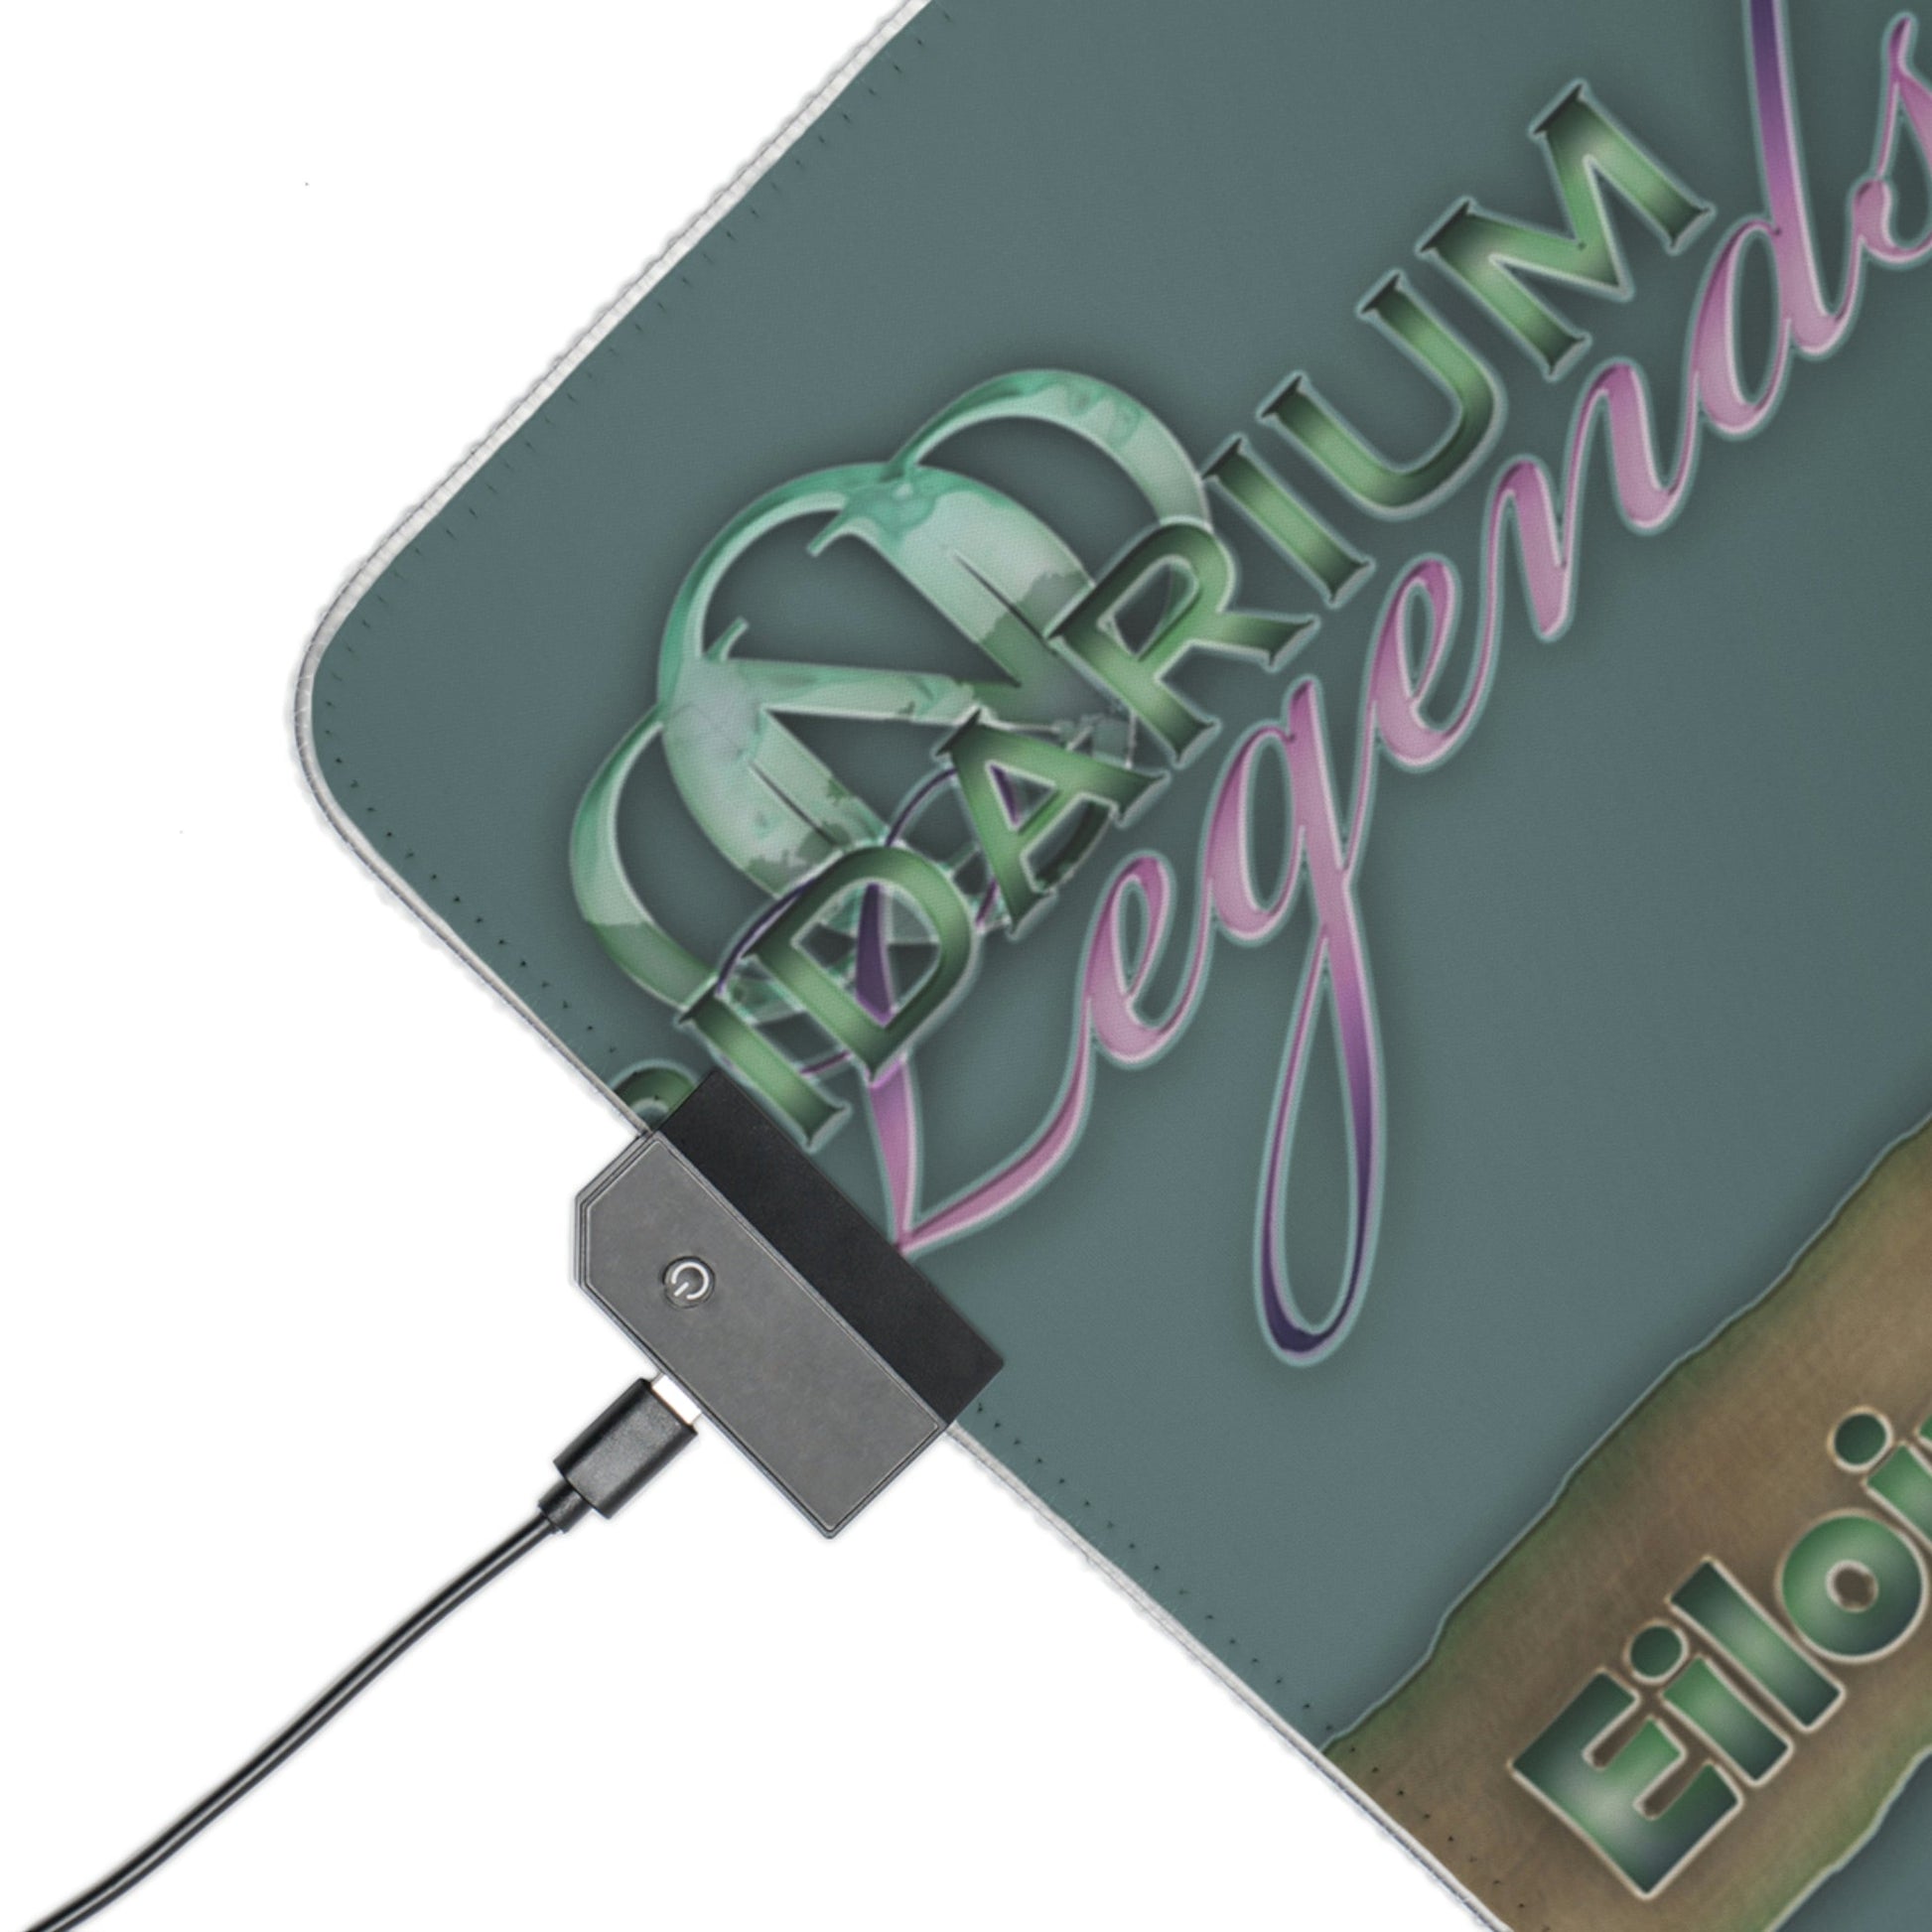 24 Viridarium Legends Eiloine LED Gaming Mouse Pad with 14